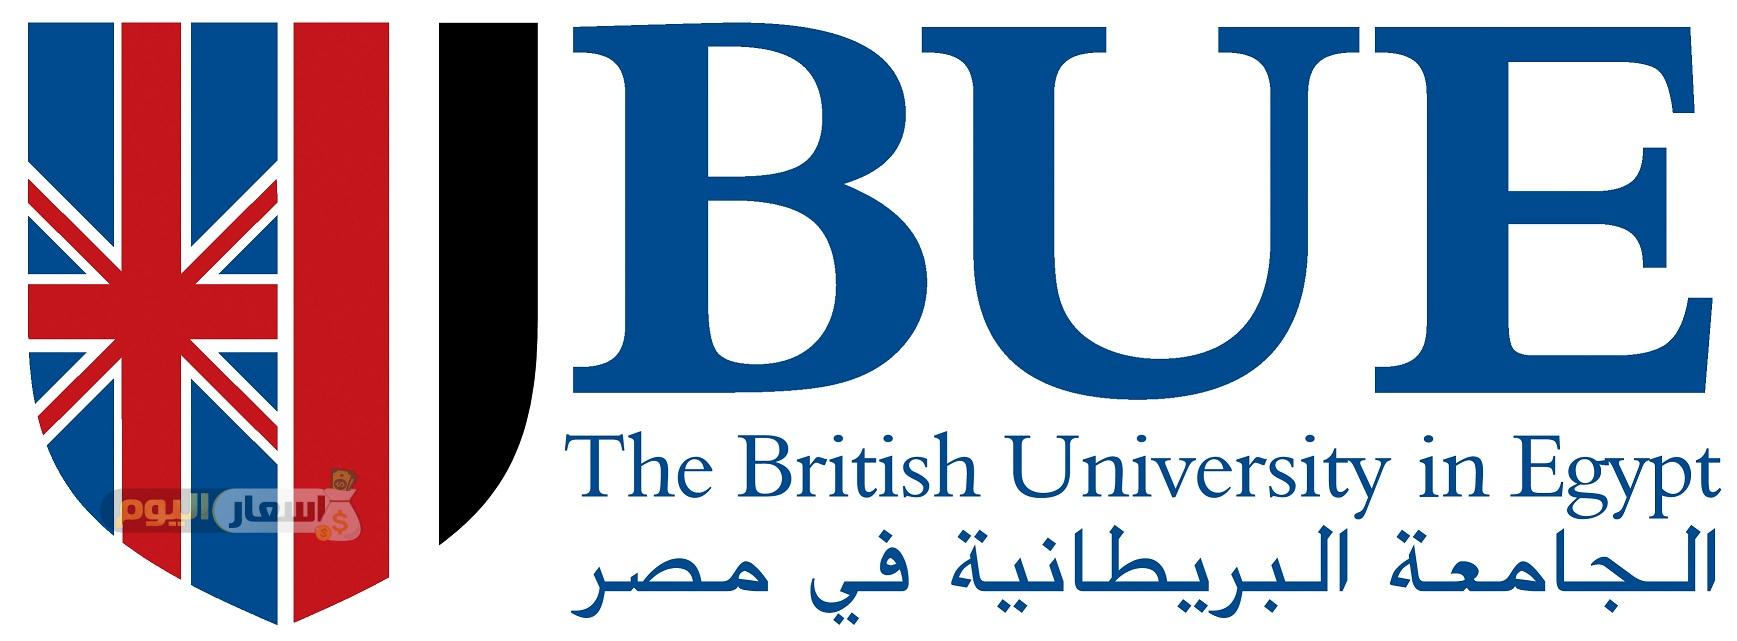 مصروفات الجامعة البريطانية في مصر 2019